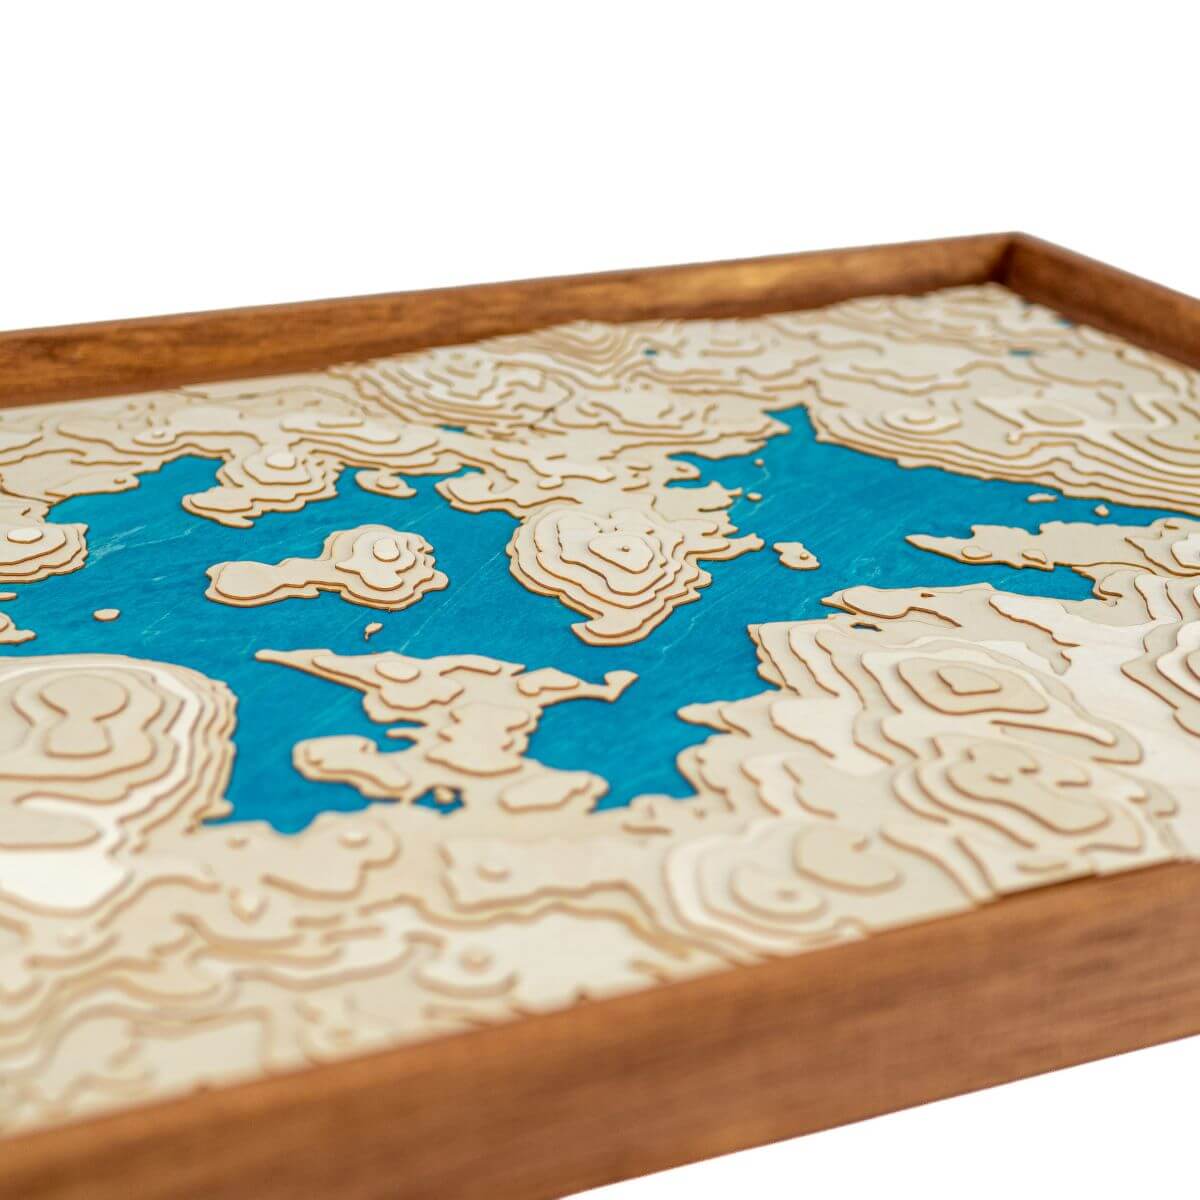 Détails du relief de la carte du lac de Vassivière en bois